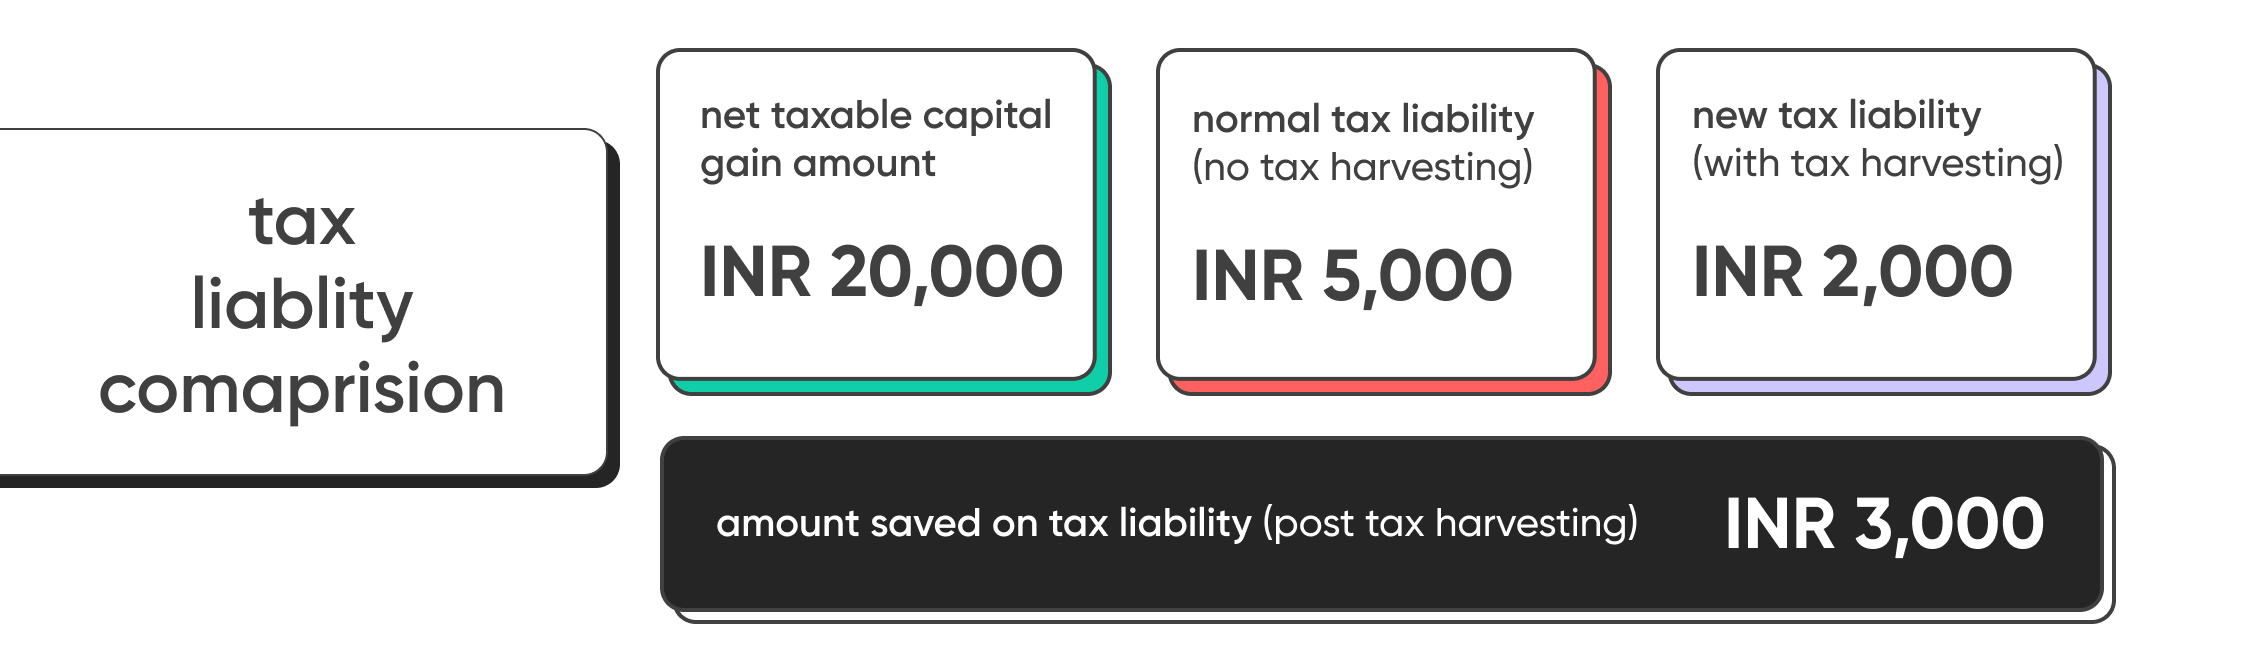 Tax laiblity comparison